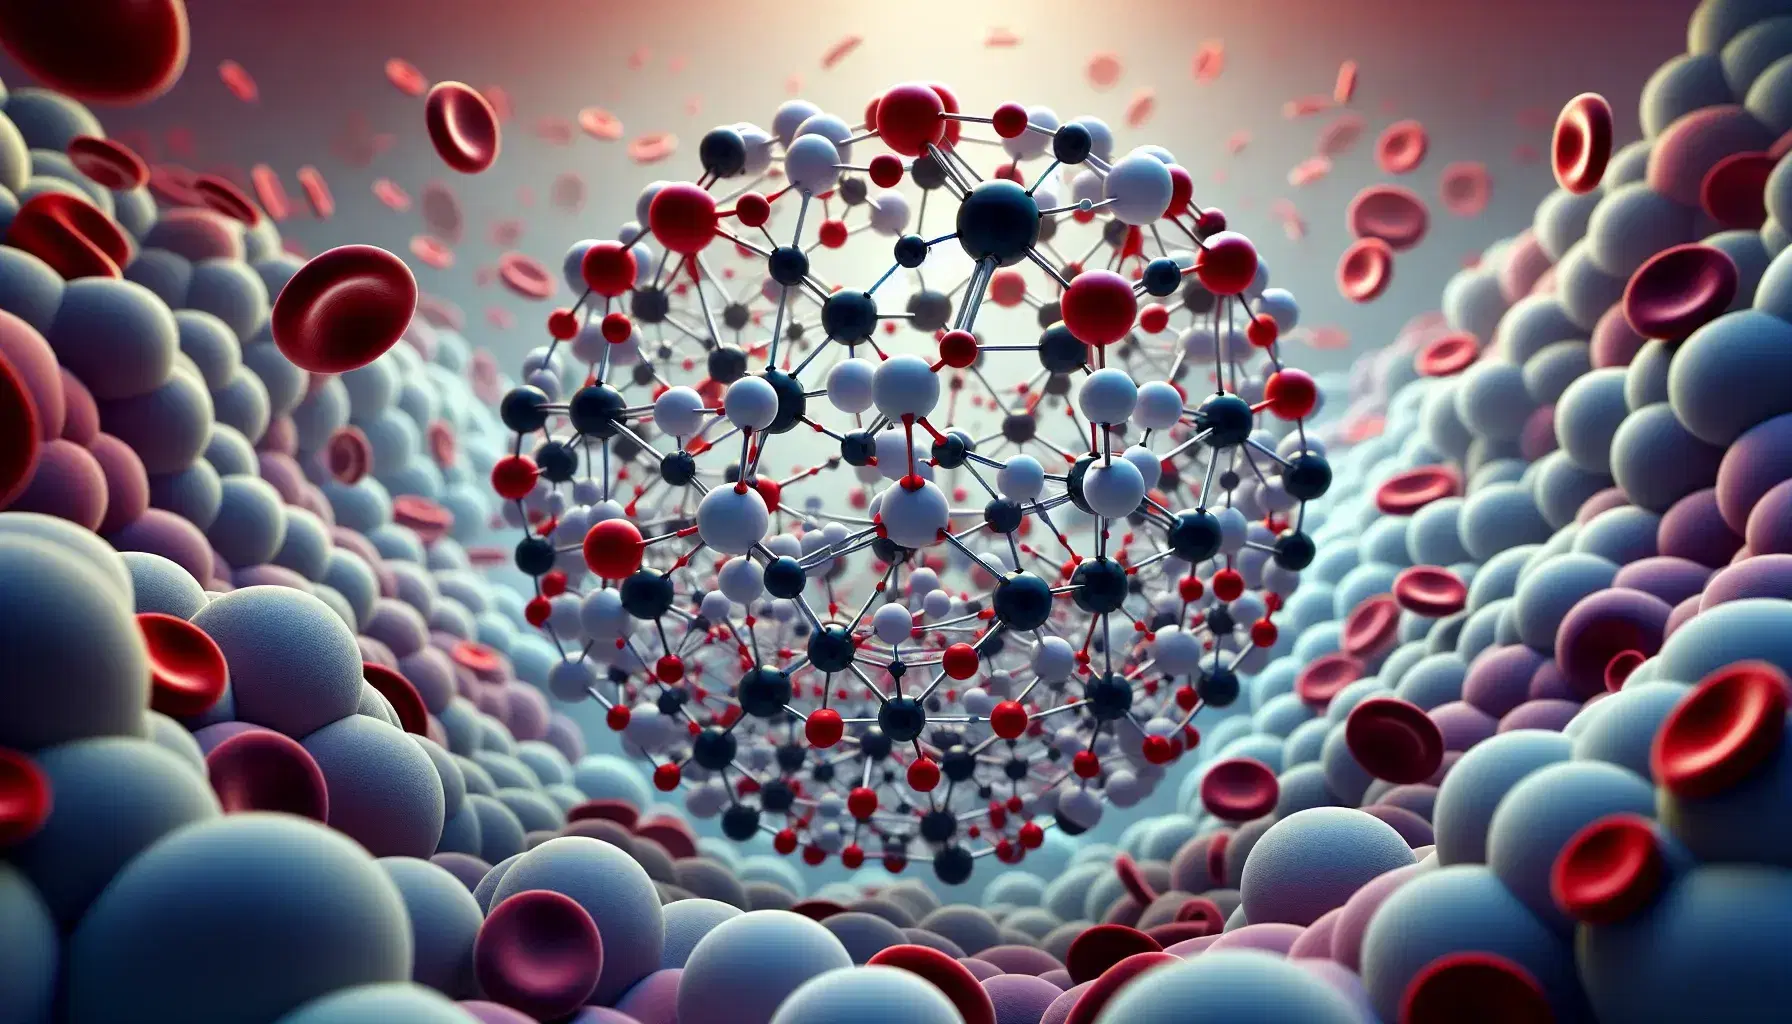 Estructuras moleculares tridimensionales con átomos de colores conectados por enlaces y células sanguíneas rojas en fondo translúcido.